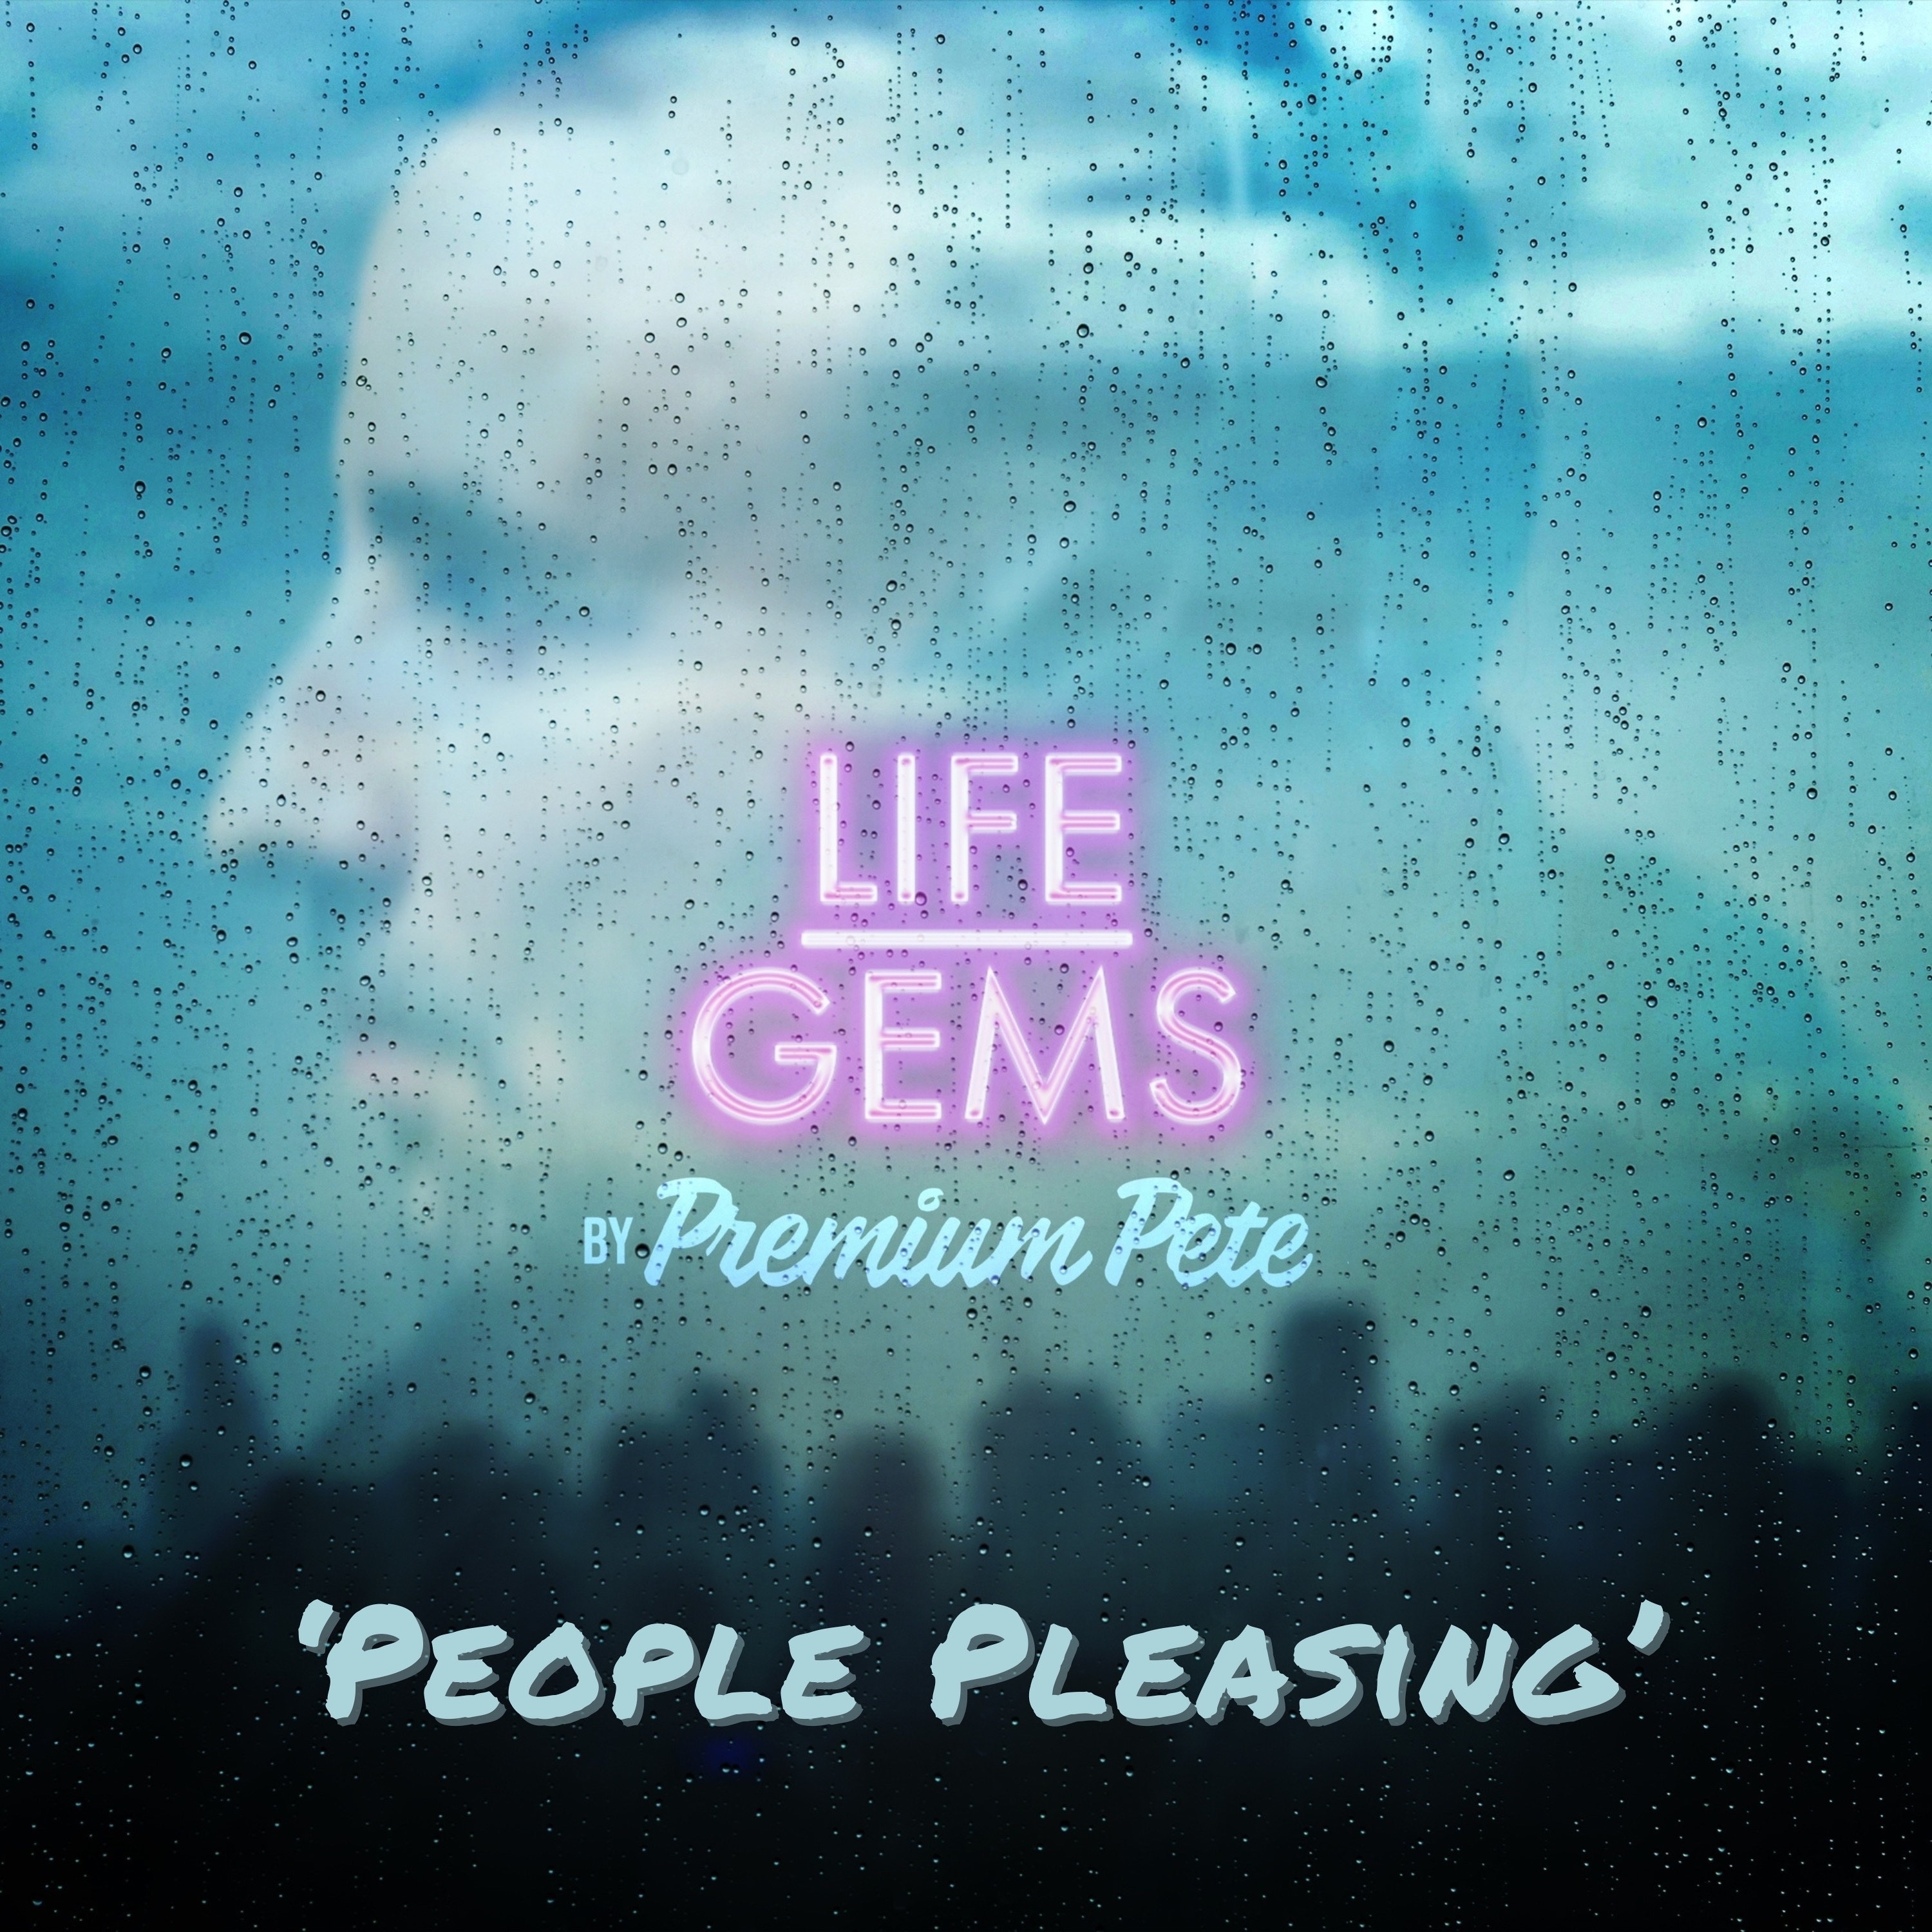 Life Gems "People Pleasing"